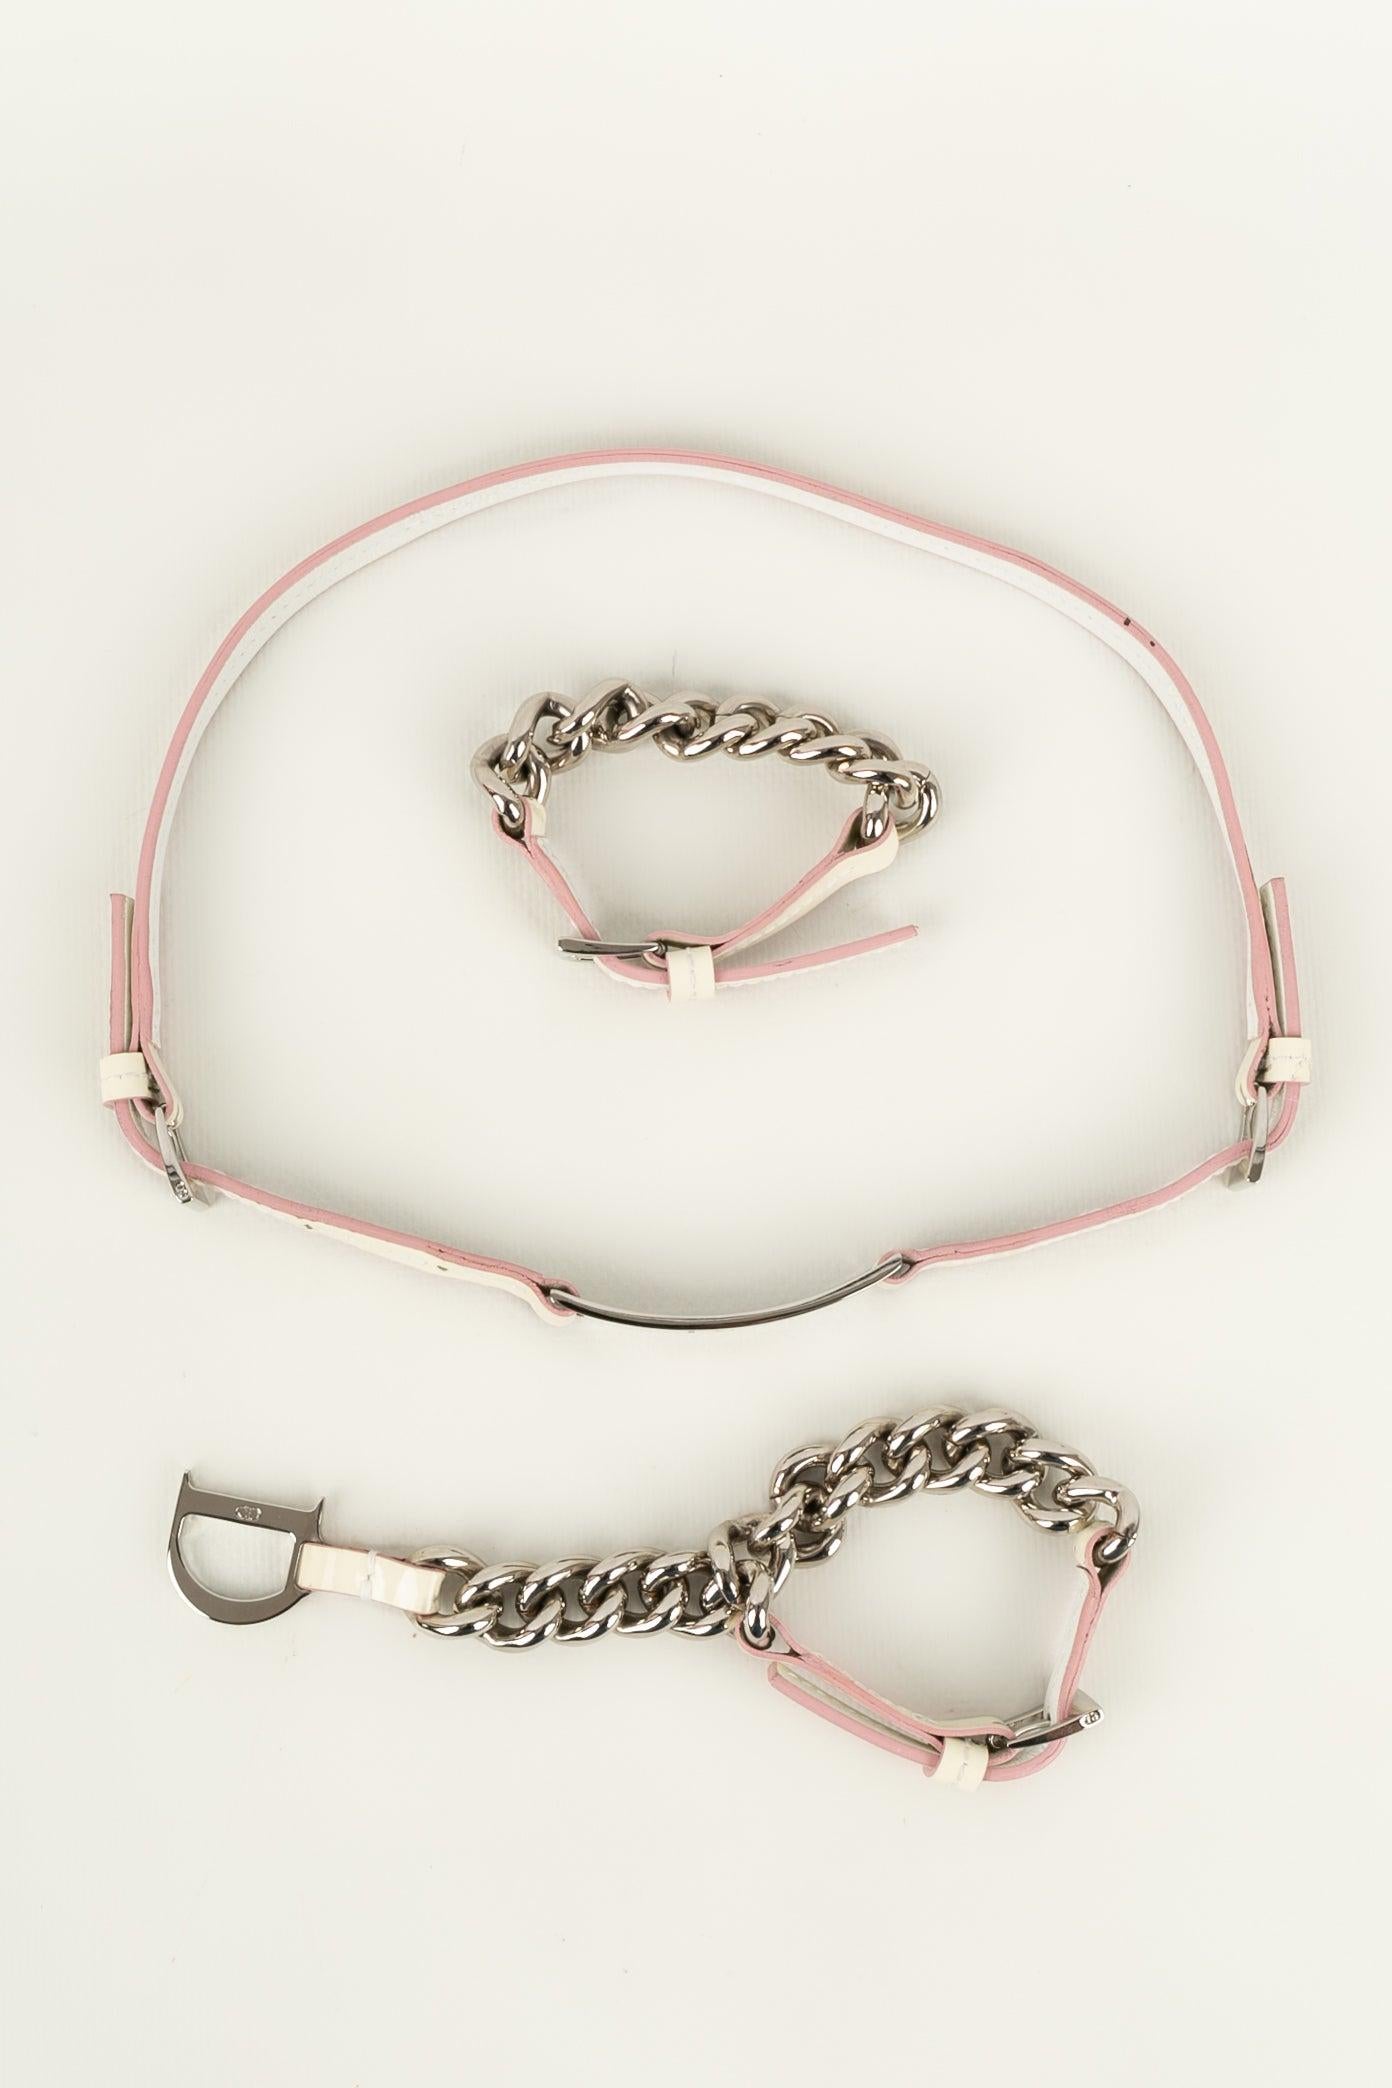 Christian Dior Silver-plated Metal Adjustable Belt For Sale 10